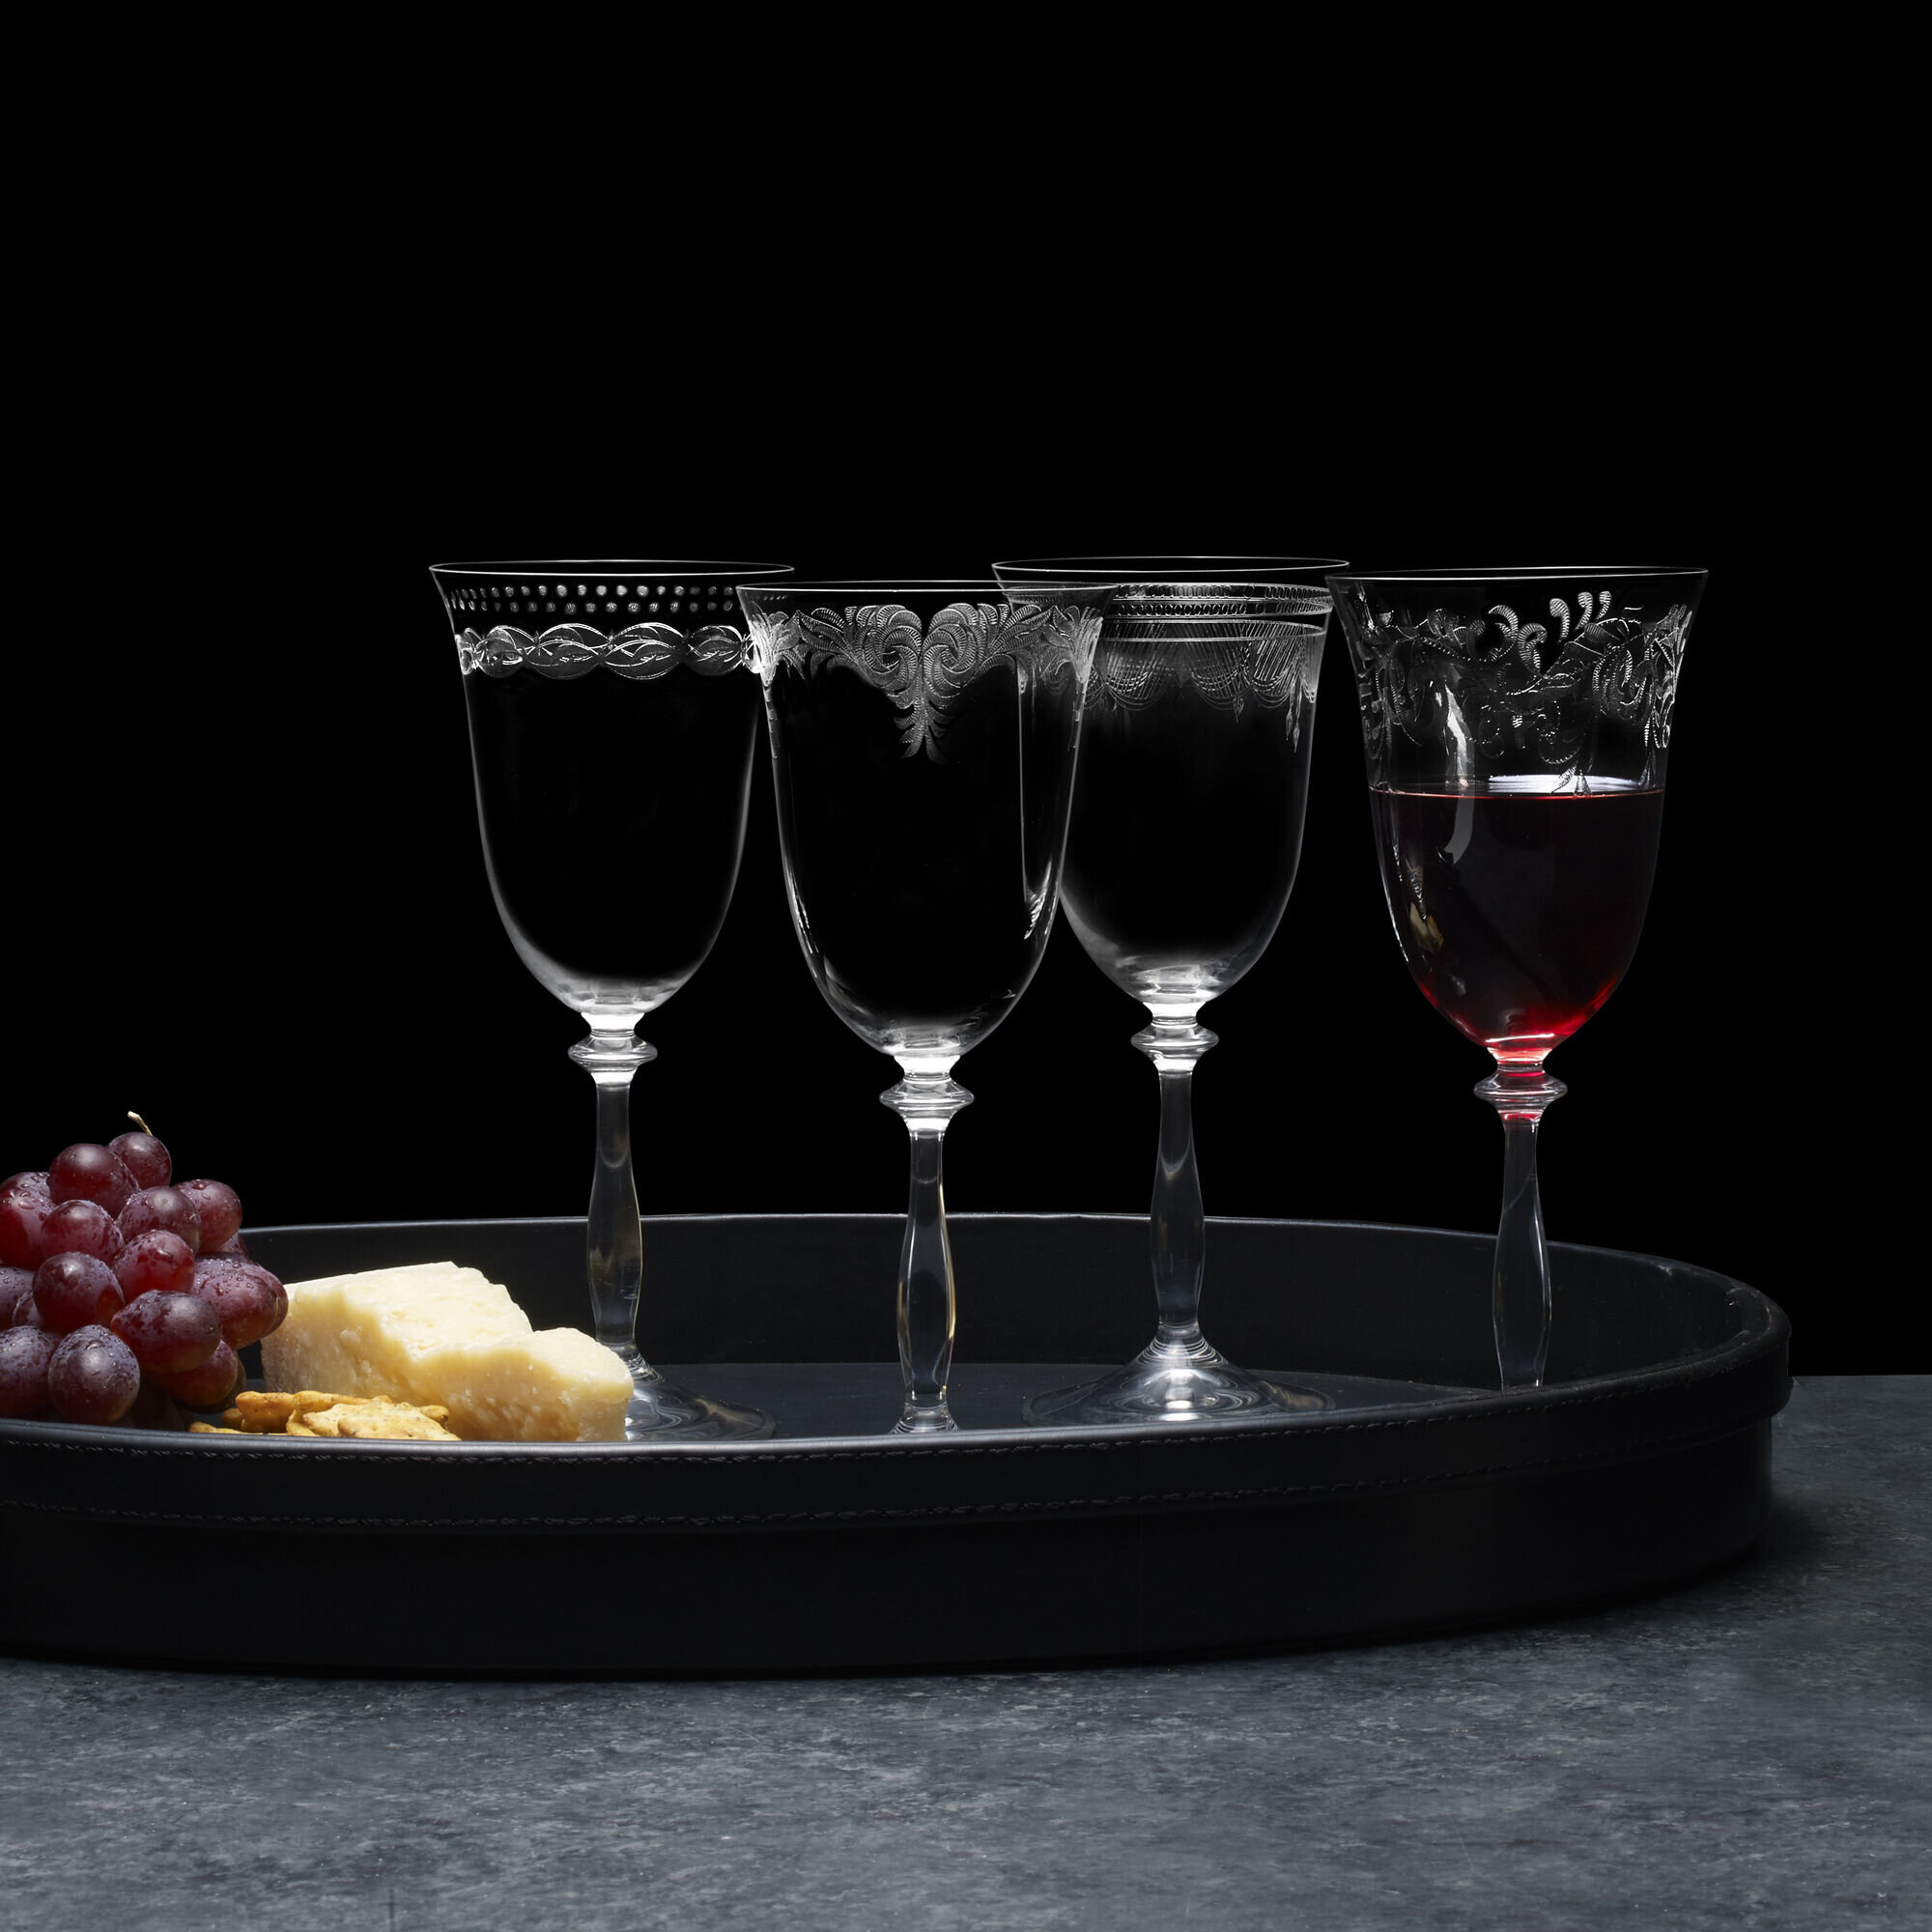 5 Vintage Acid Etched Crystal Water Goblet - Wine Glasses